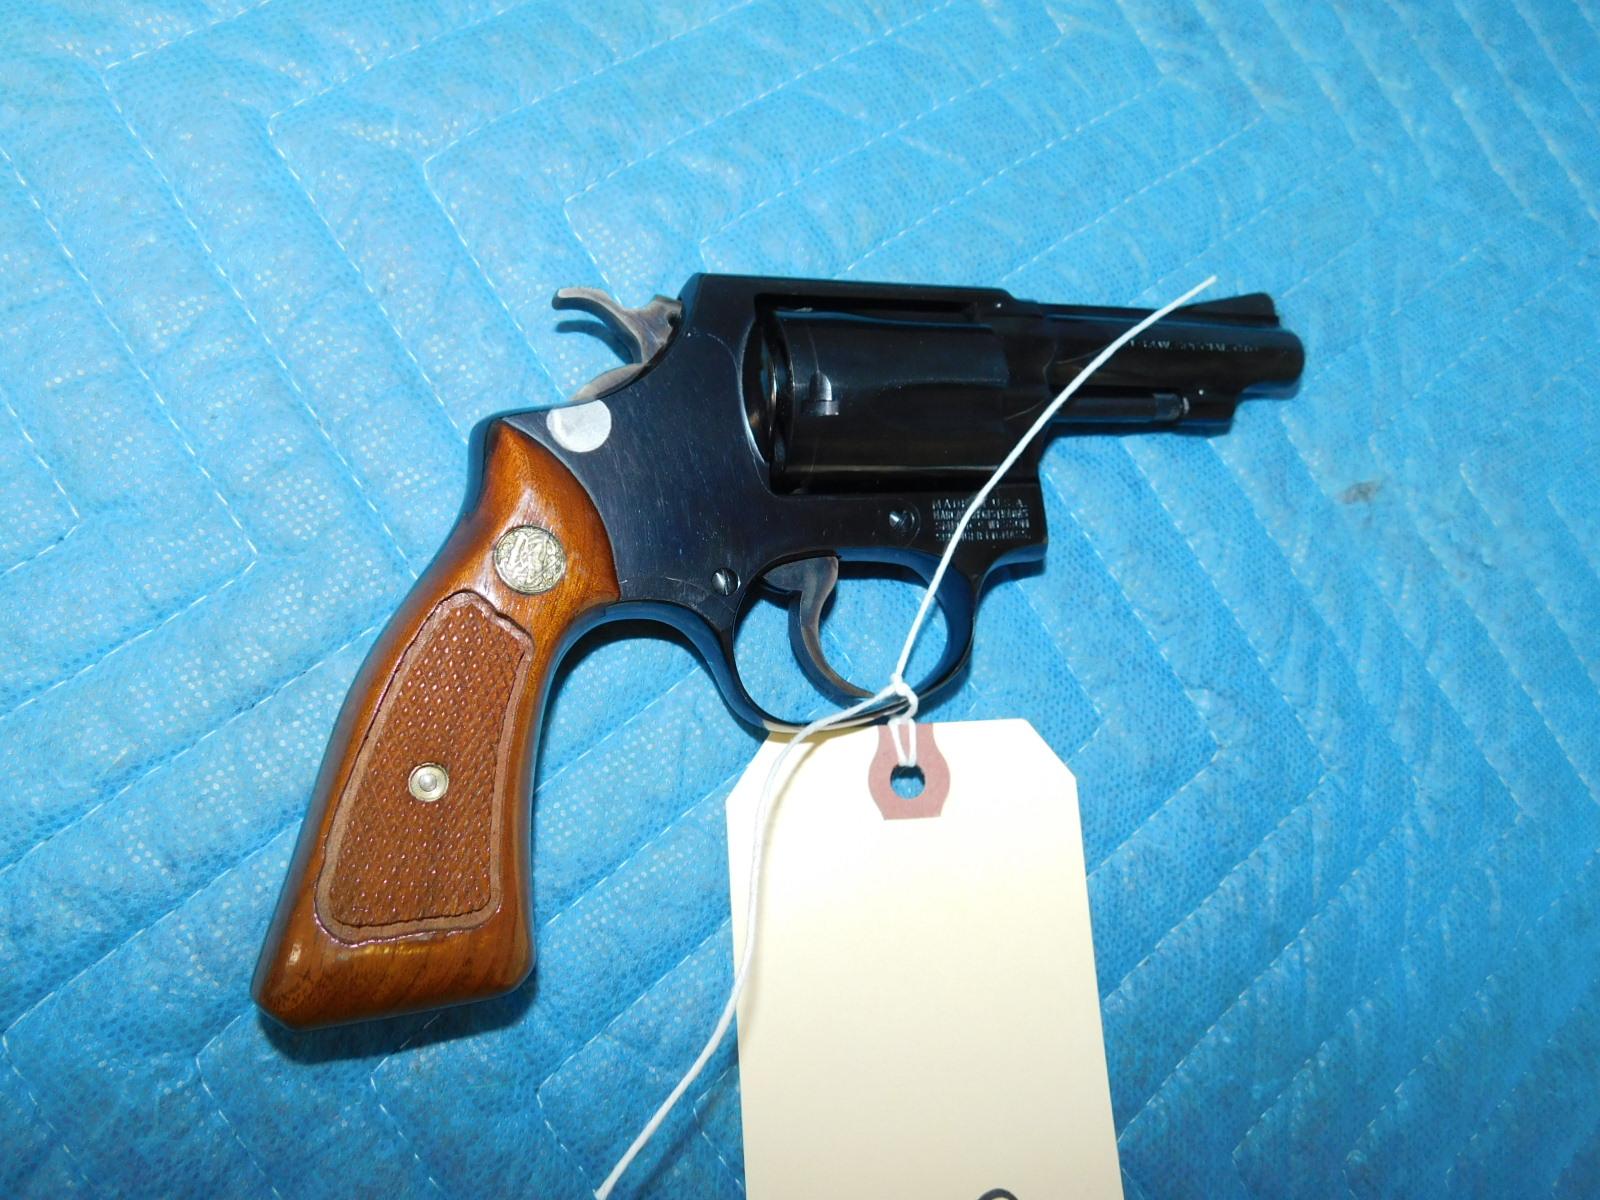 Smith & Wesson .38 Chiefs Special Revolver Model 36 w/ Original Box & Instructions